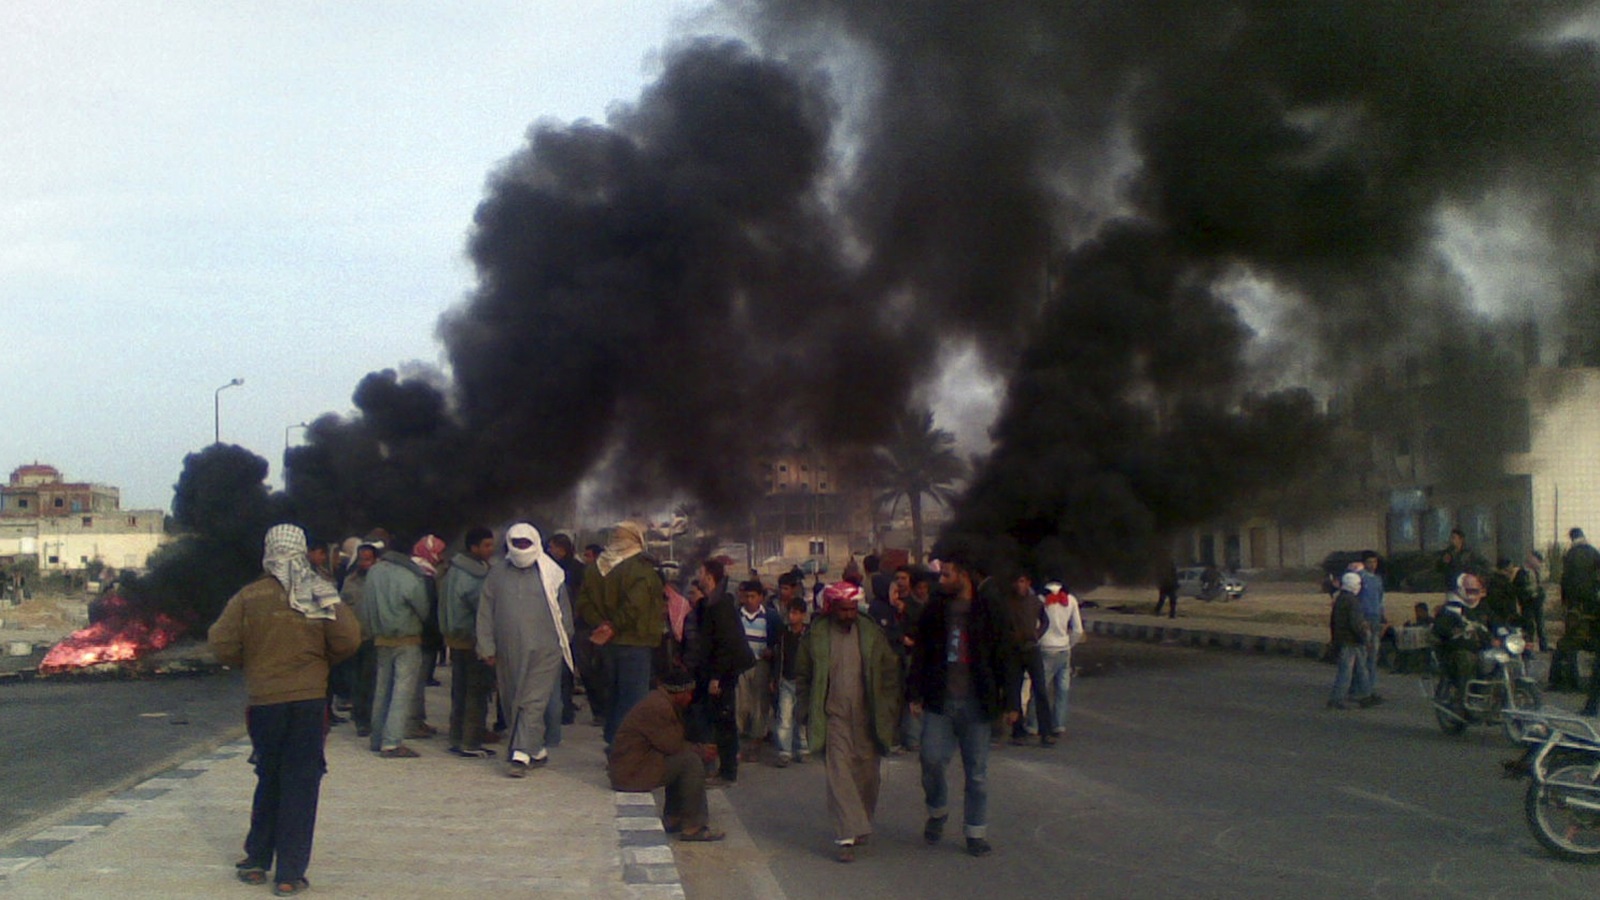 خلال أيام ثورة يناير2011، فقدت الحكومة المصرية سيطرتها على شمال سيناء، حيث حاصر البدو الغاضبون مراكز الشرطة والمنشآت العسكرية، وأحرقت الكثير من الأقسام، ونهبت أسلحتها